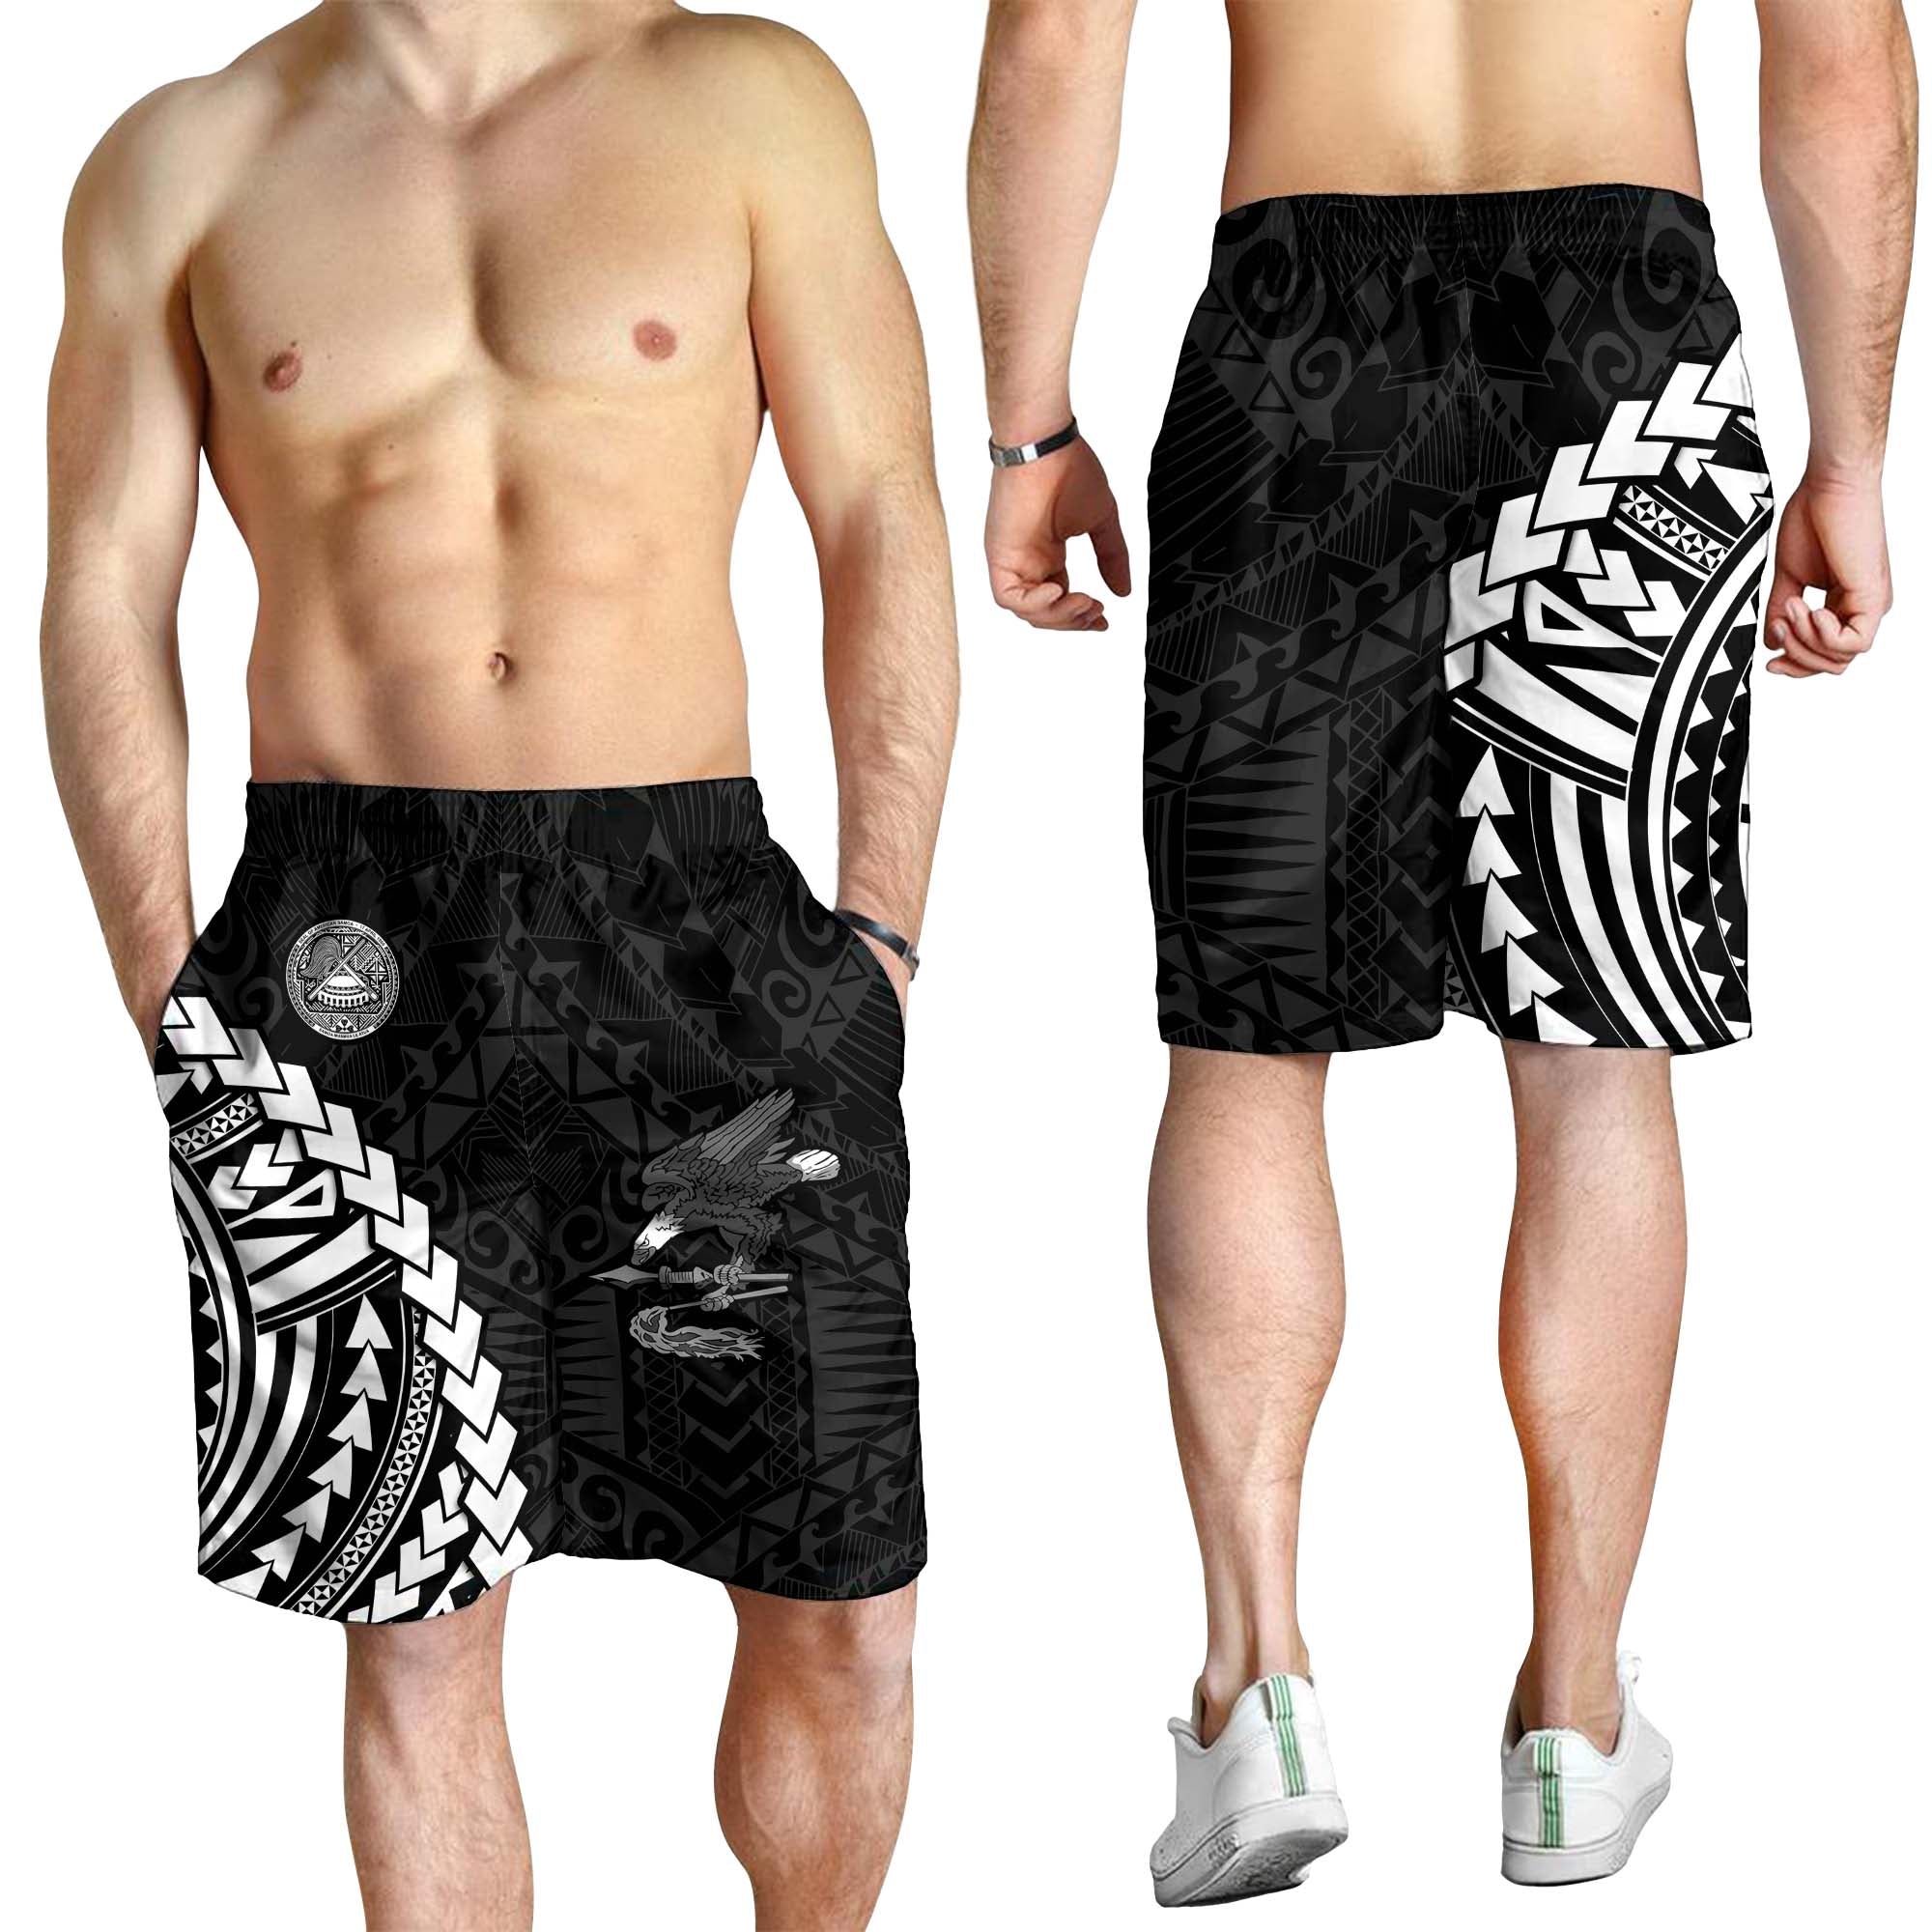 american-samoa-men-shorts-eagle-mix-polynesian